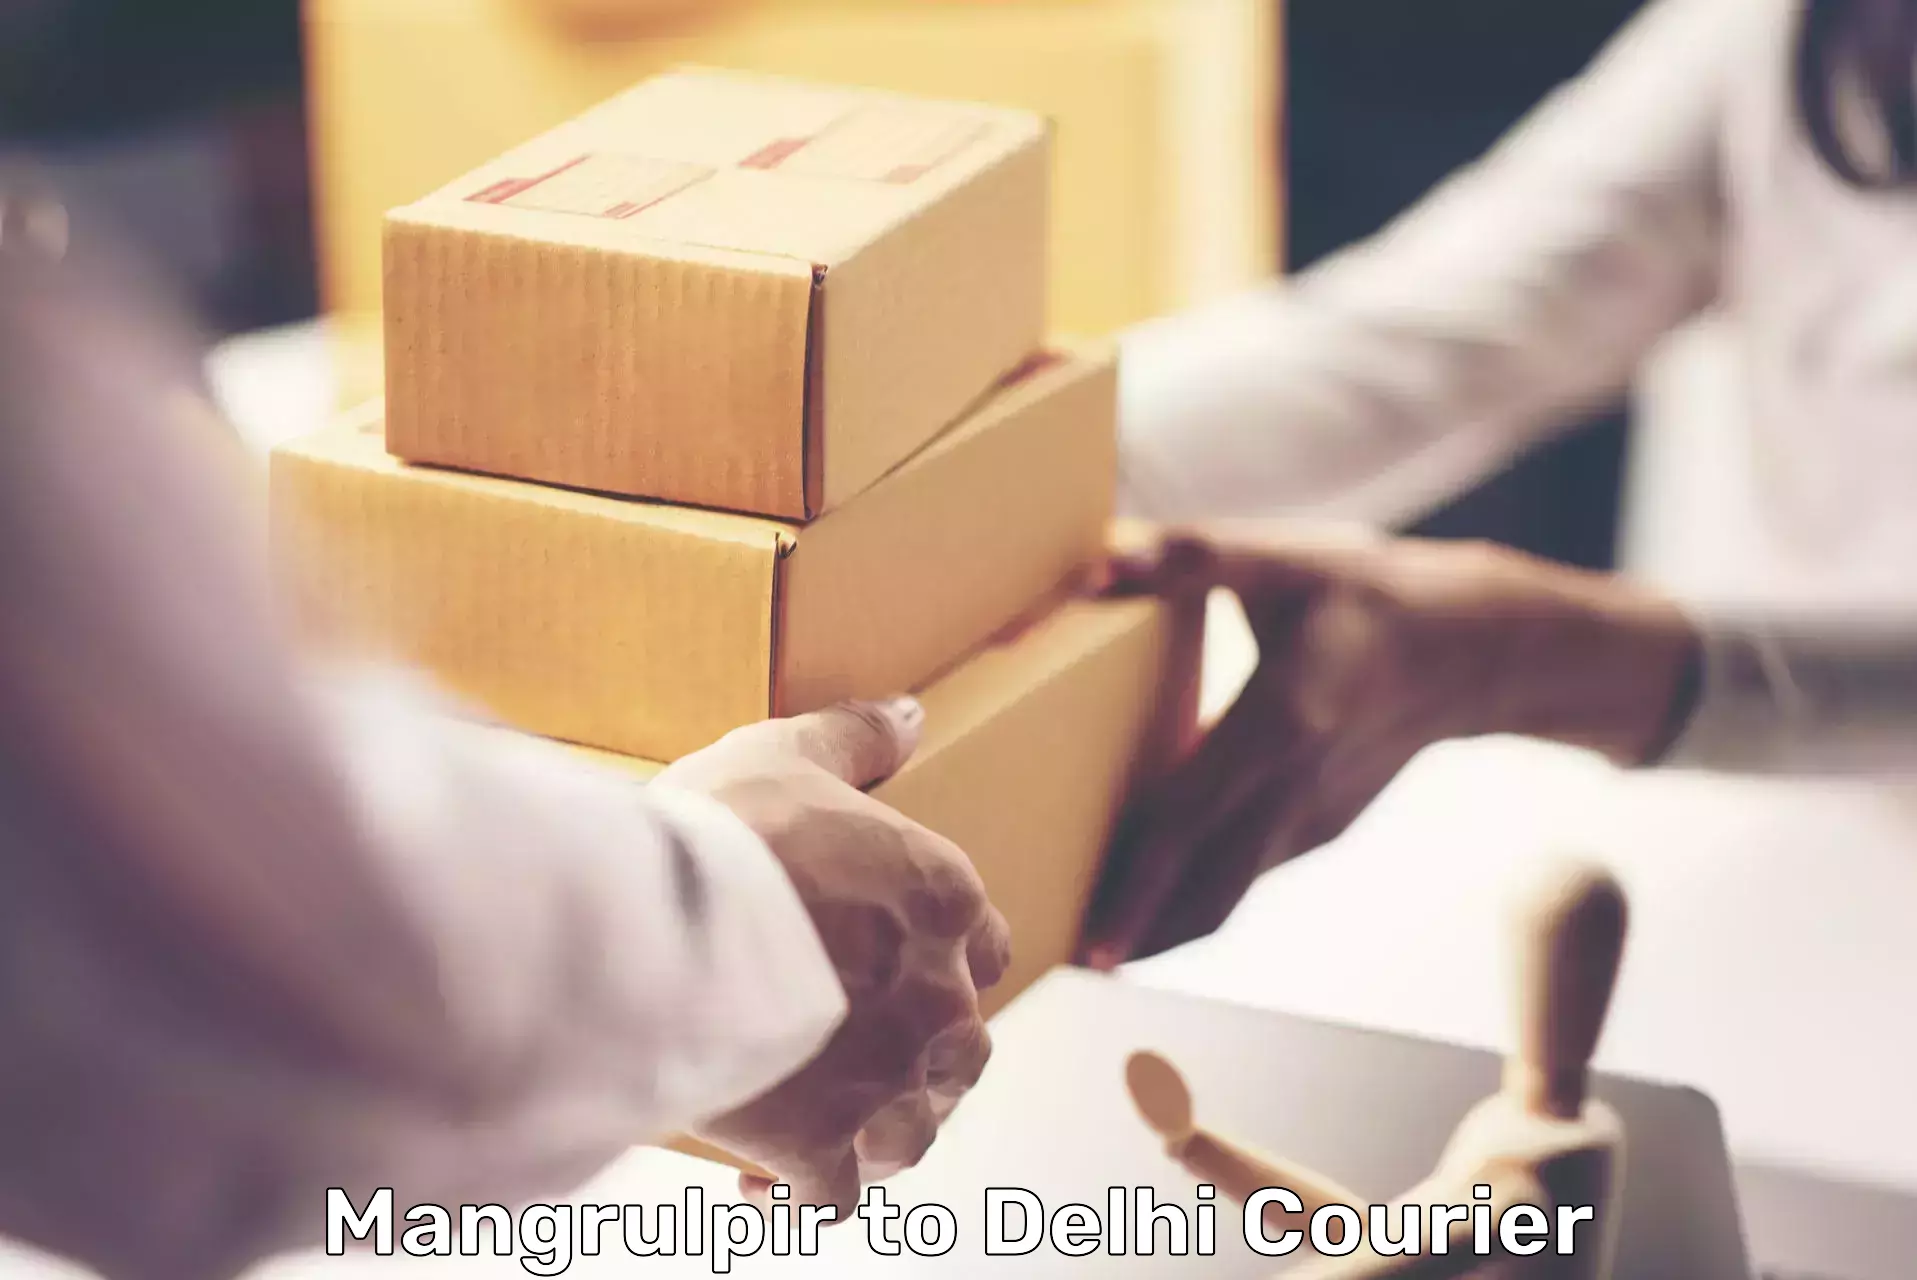 Courier rate comparison Mangrulpir to NIT Delhi